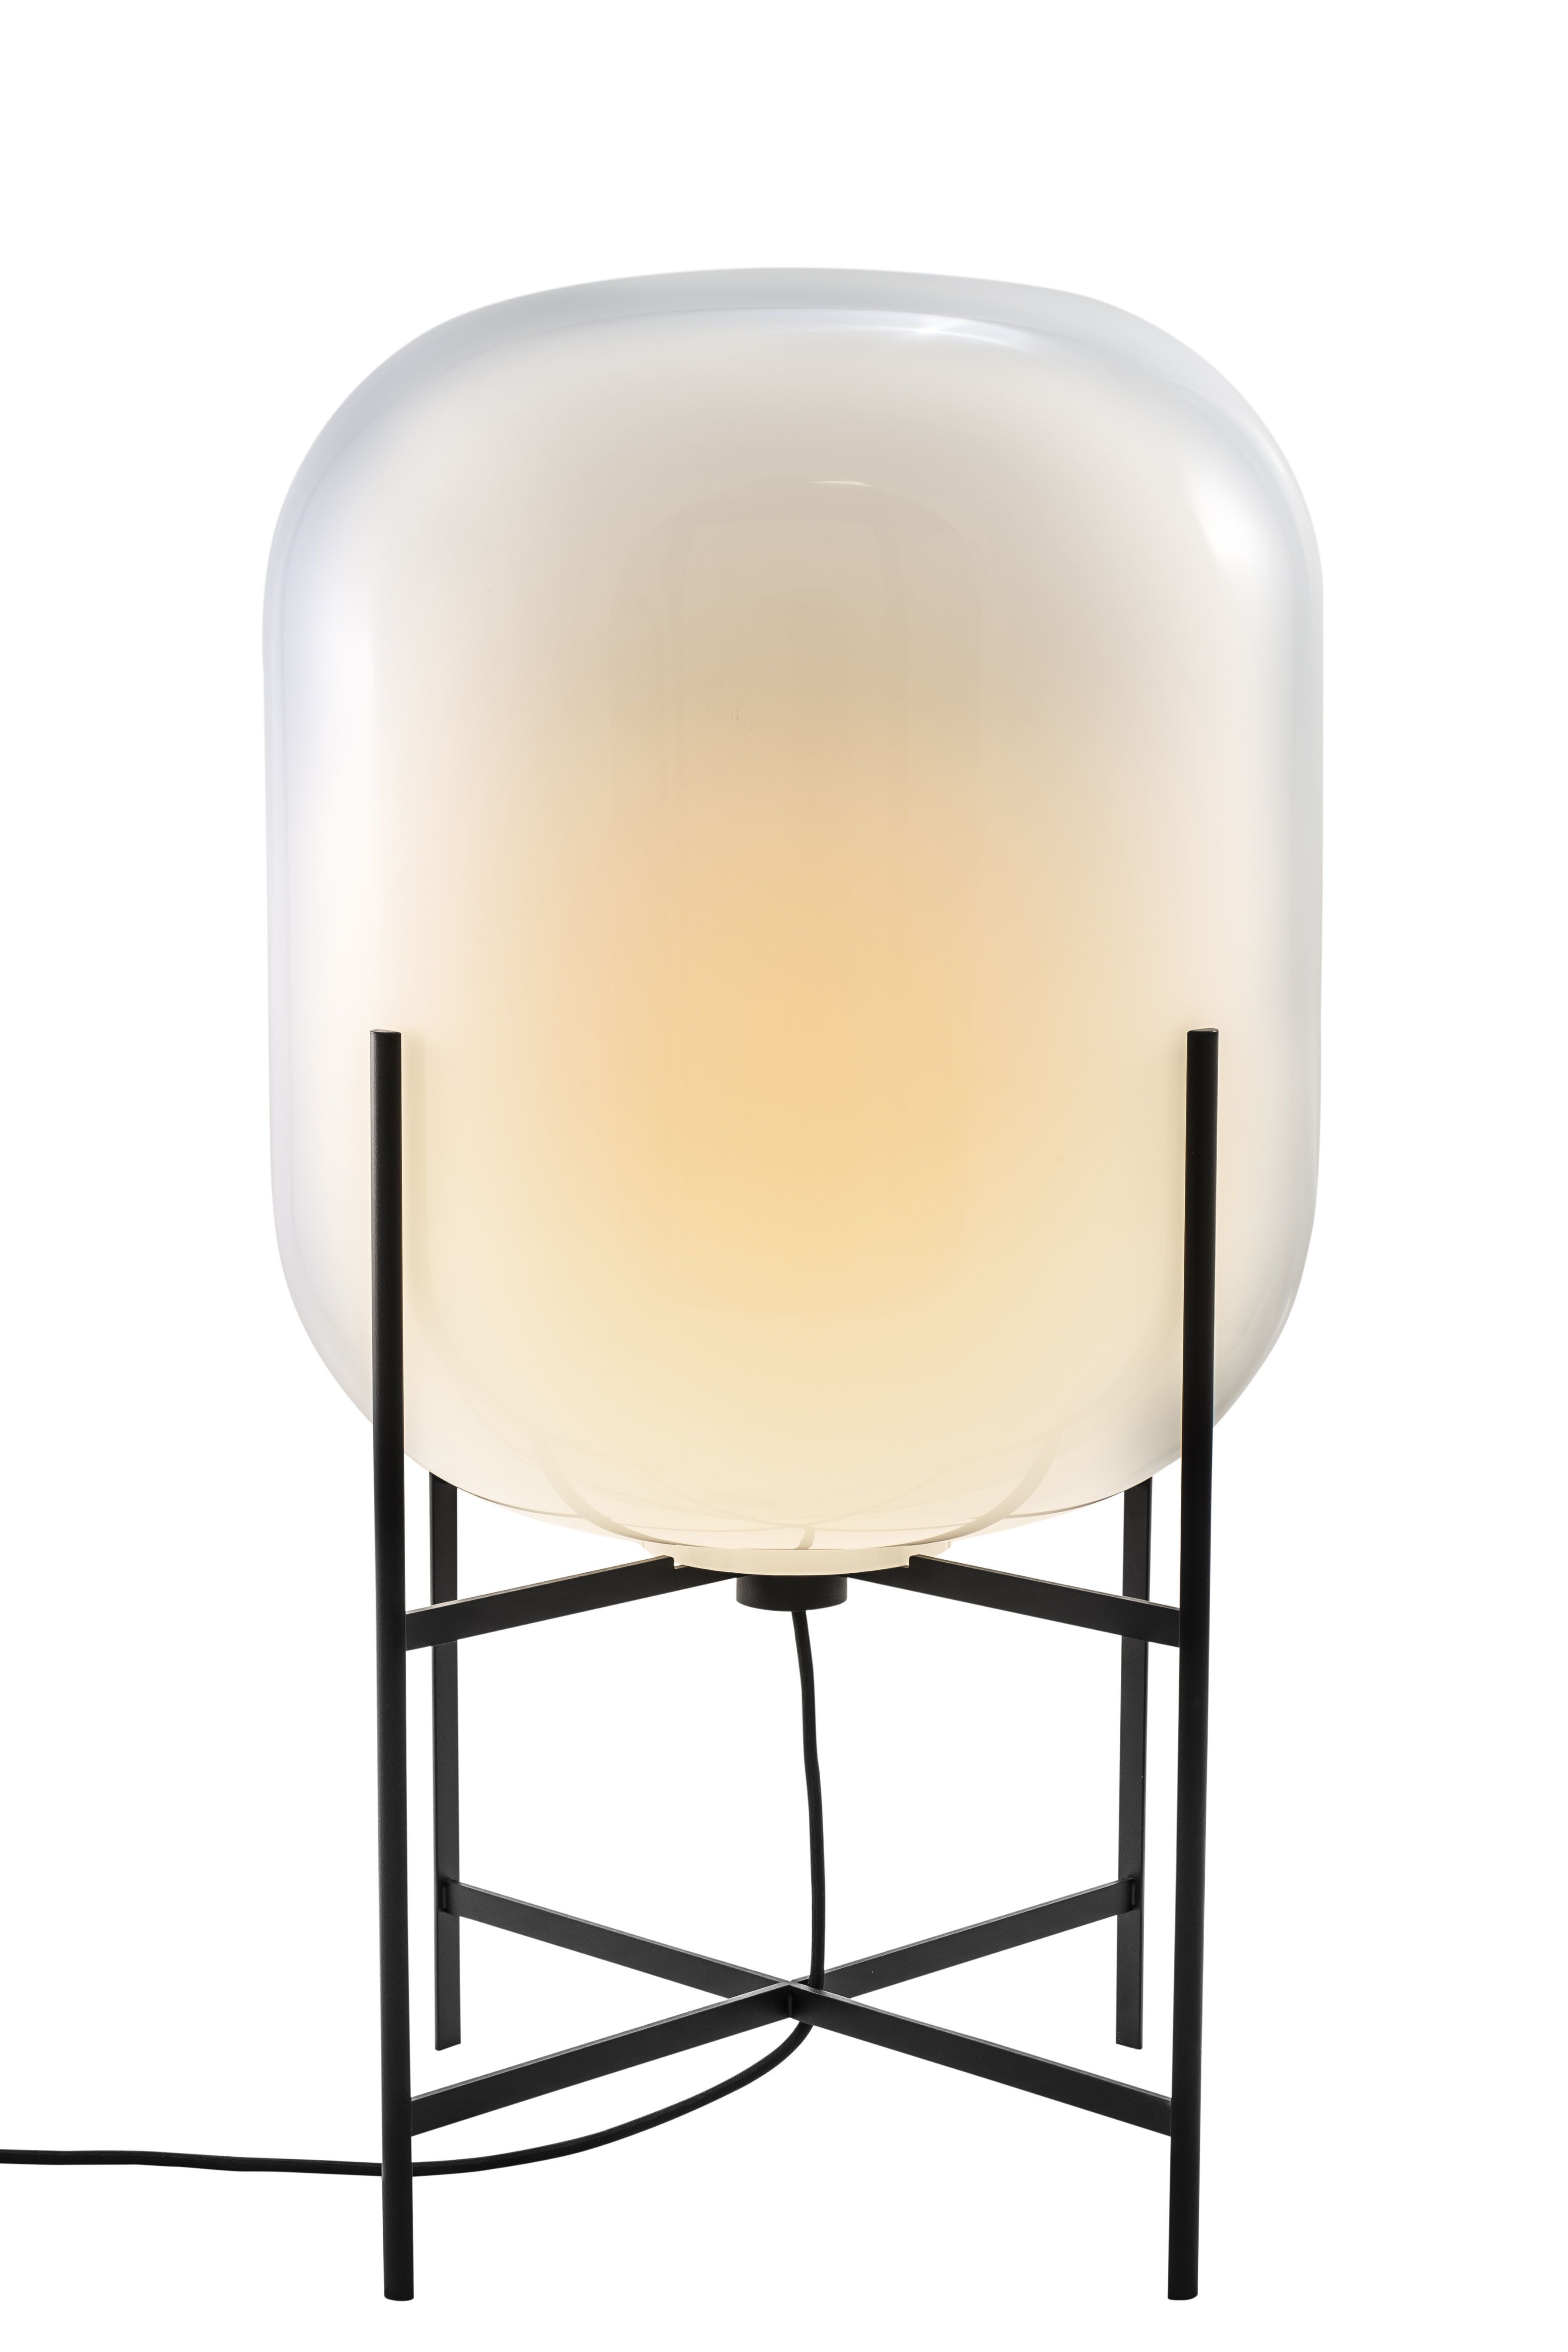 Floor Lamp Oda Medium Sebastian Herkner For Pulpo within proportions 3604 X 5406